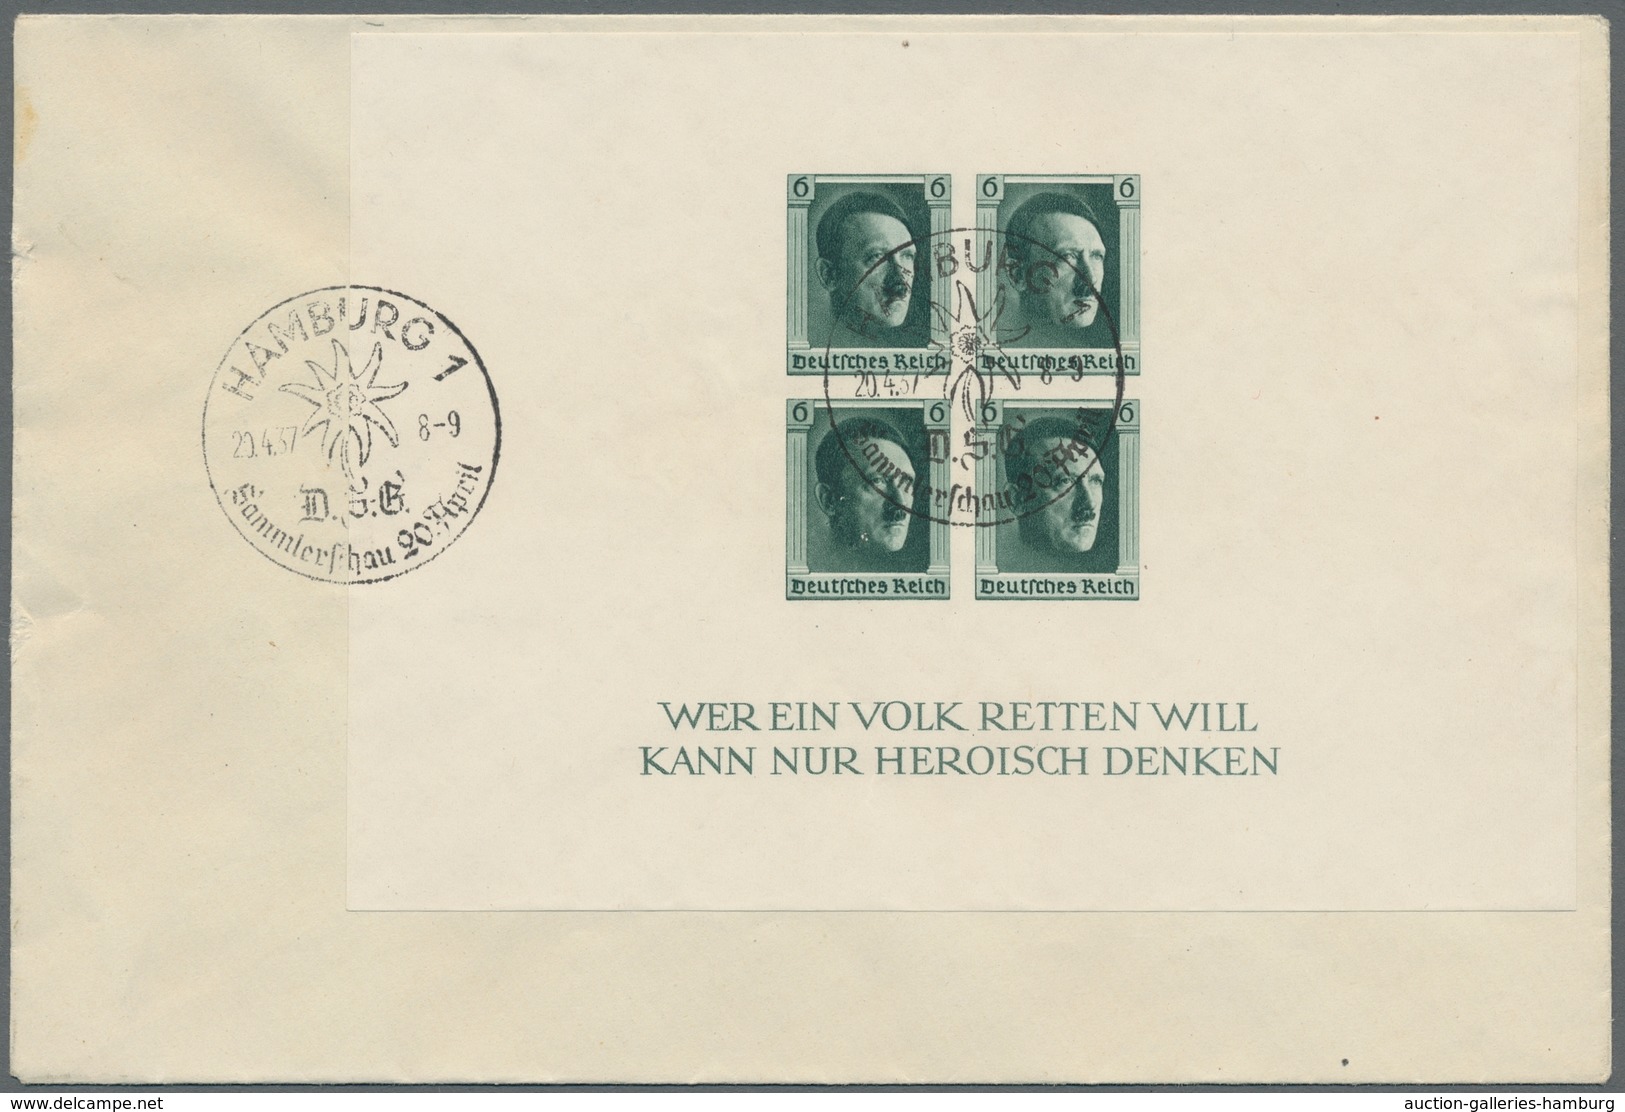 Deutschland: 1868-1965, Bestand von etwa 300 Belegen mit u.a. viel Deutschem Reich, Kontrollrat, Biz